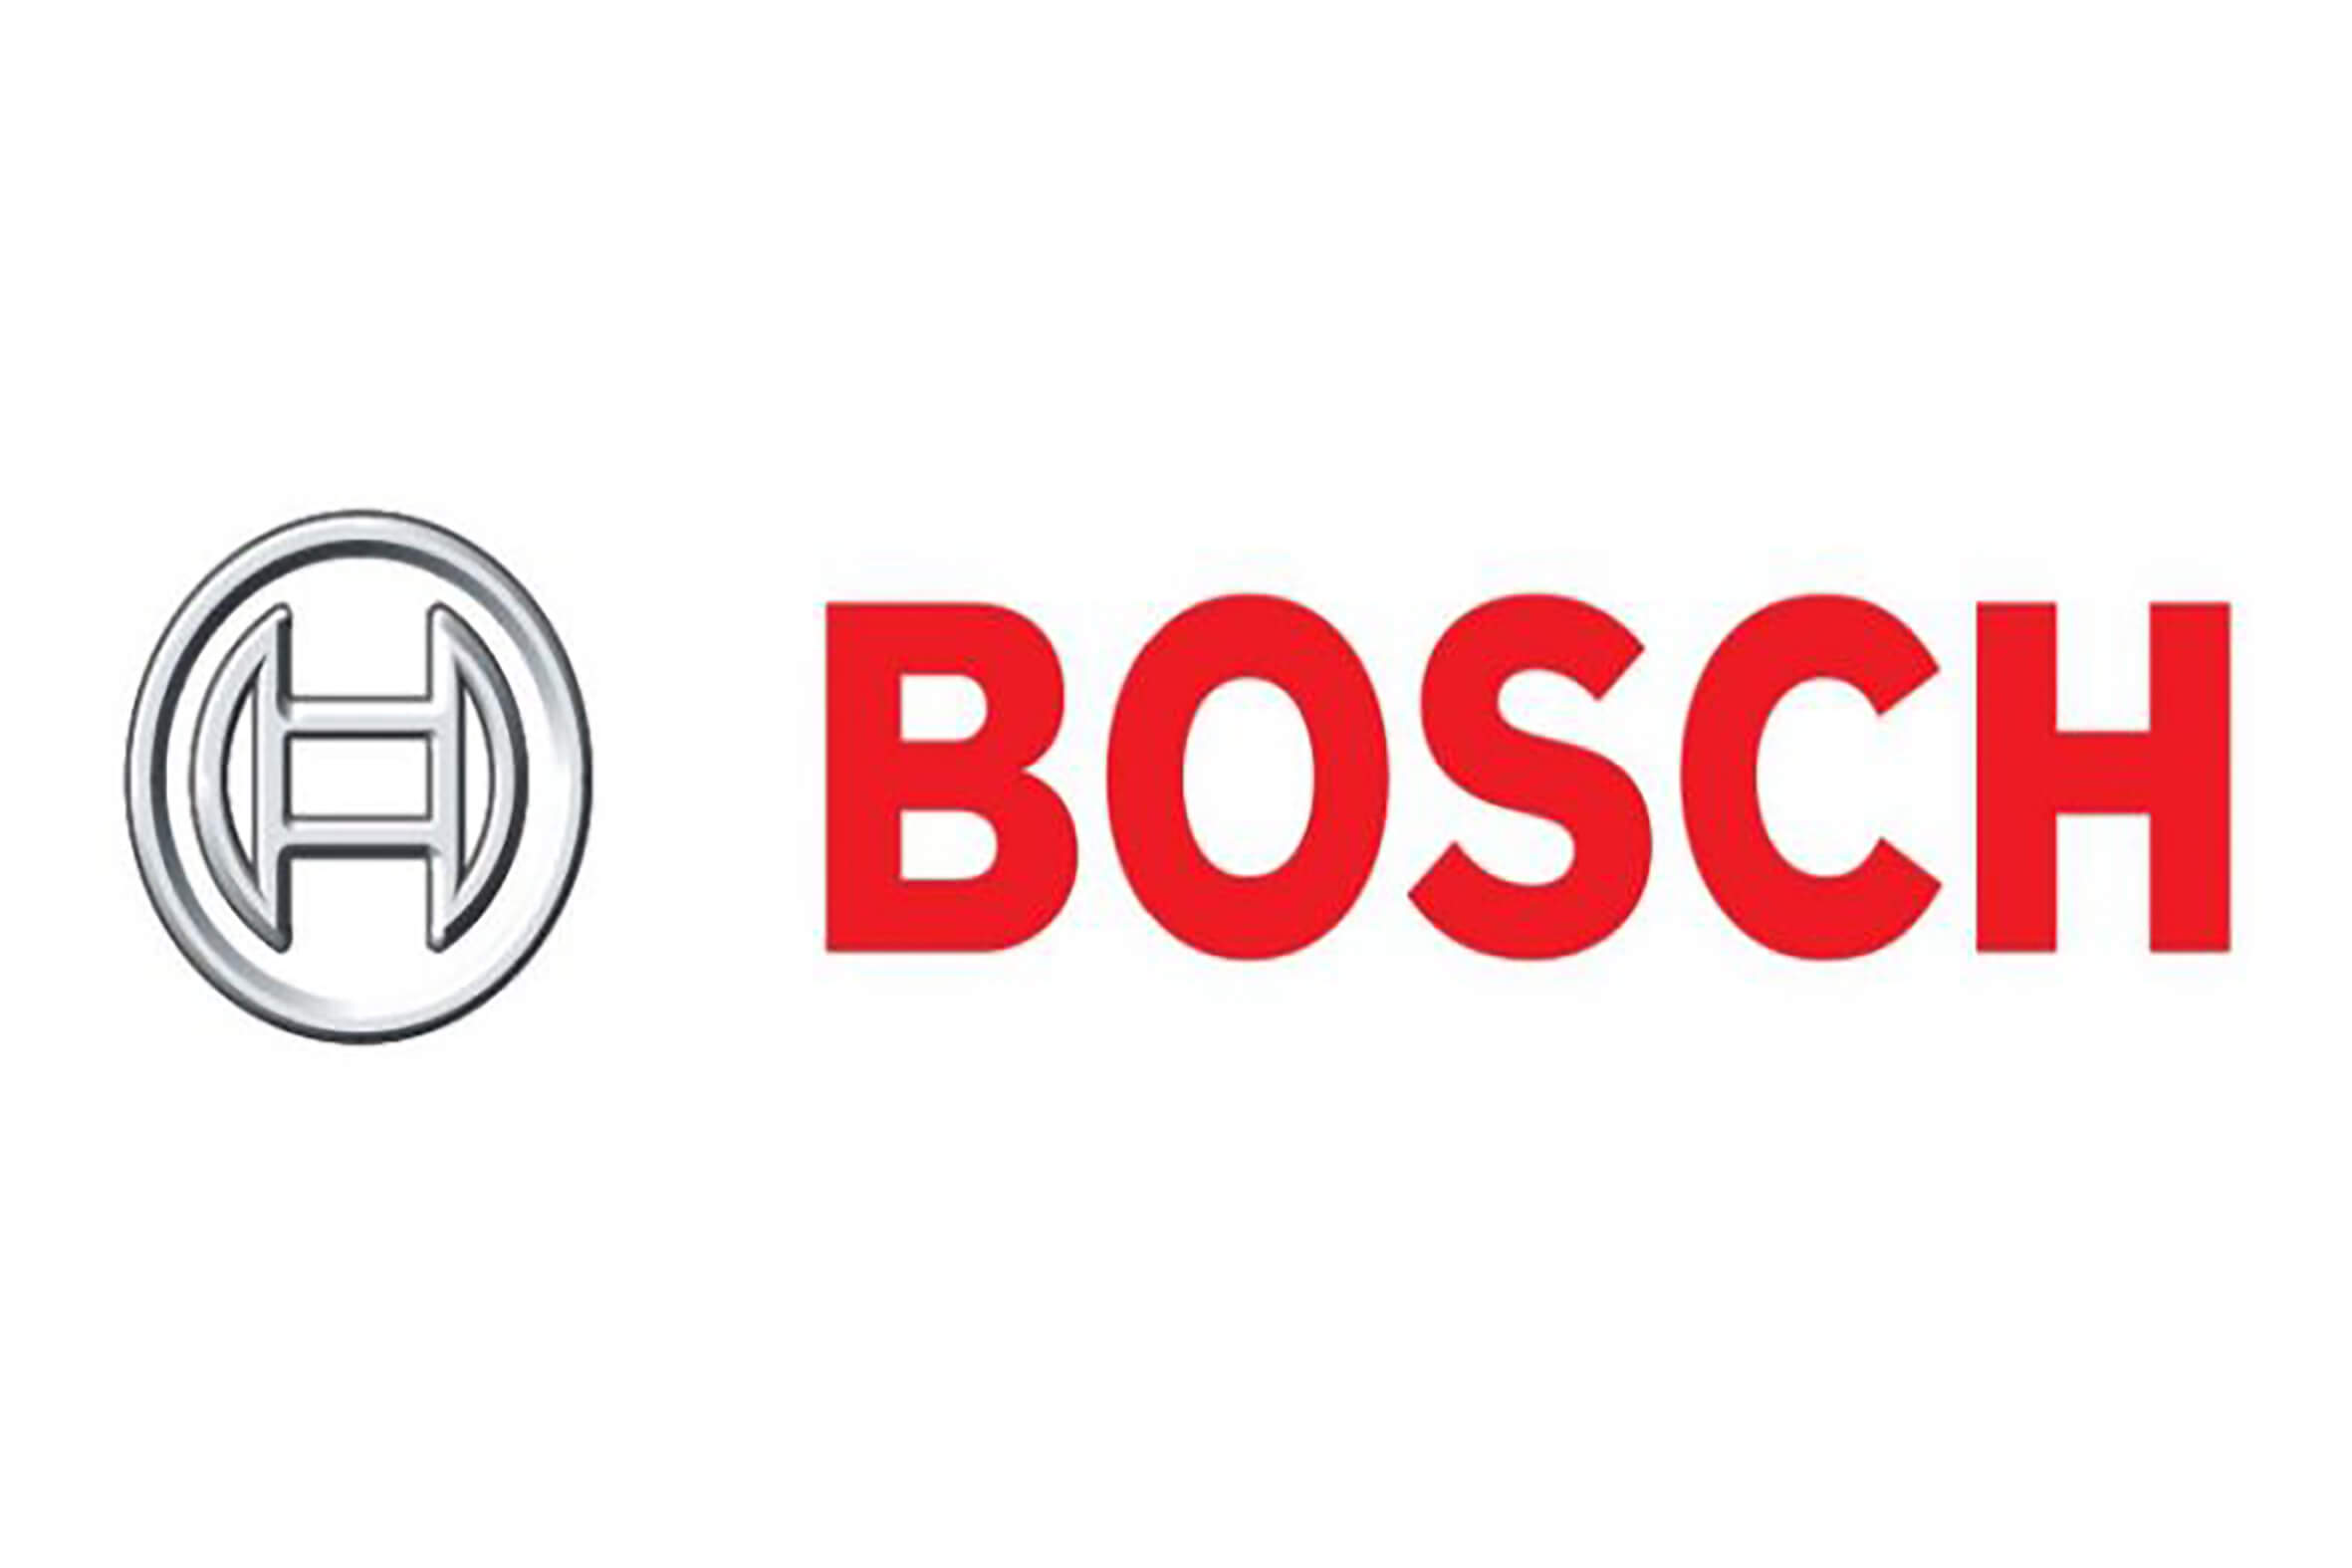 Bosch España